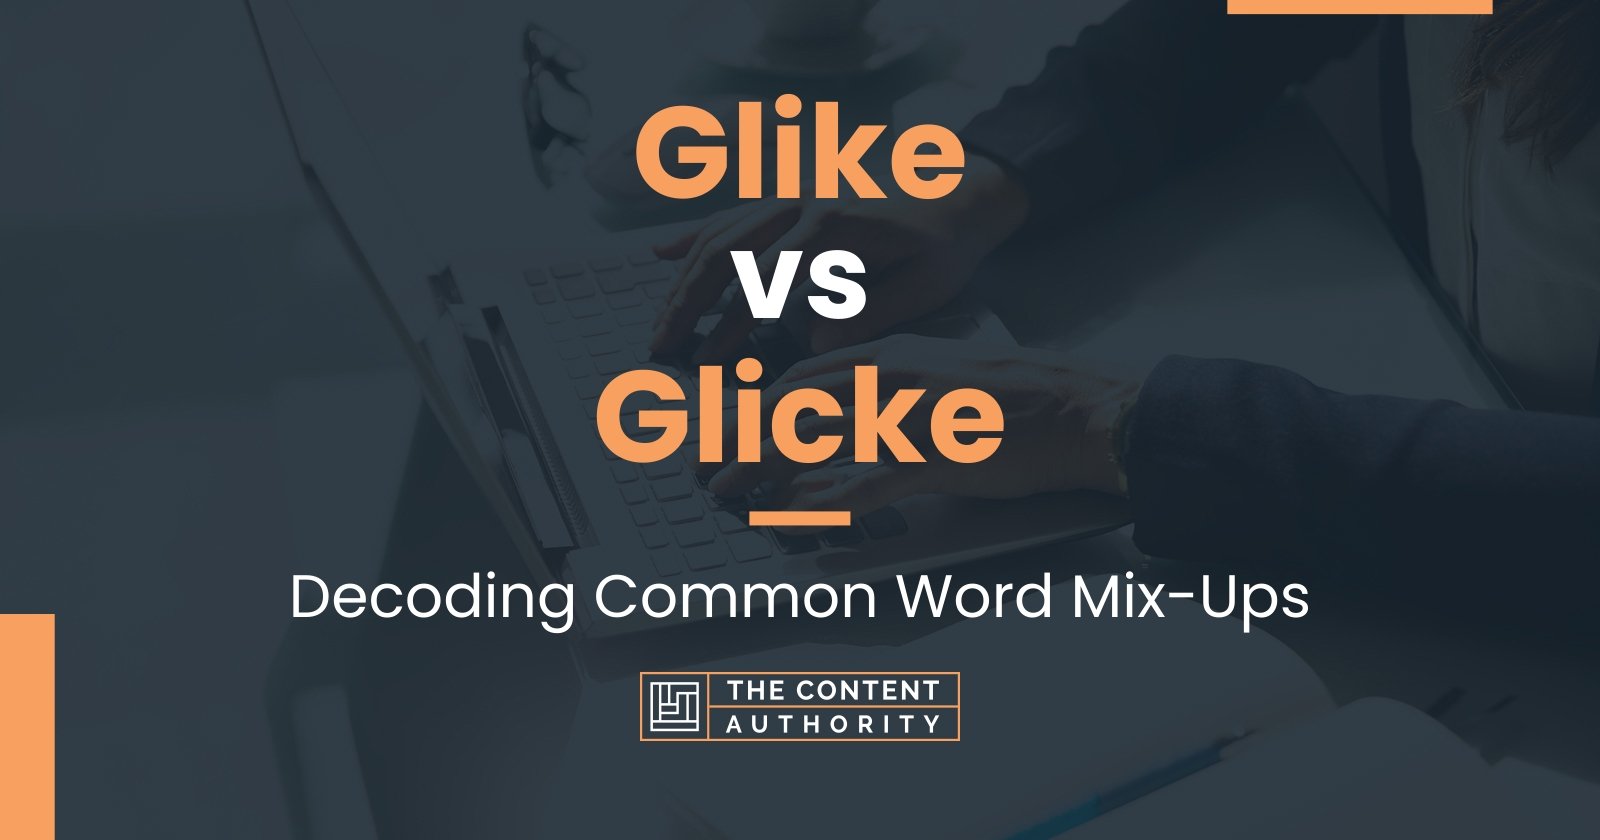 Glike vs Glicke: Decoding Common Word Mix-Ups